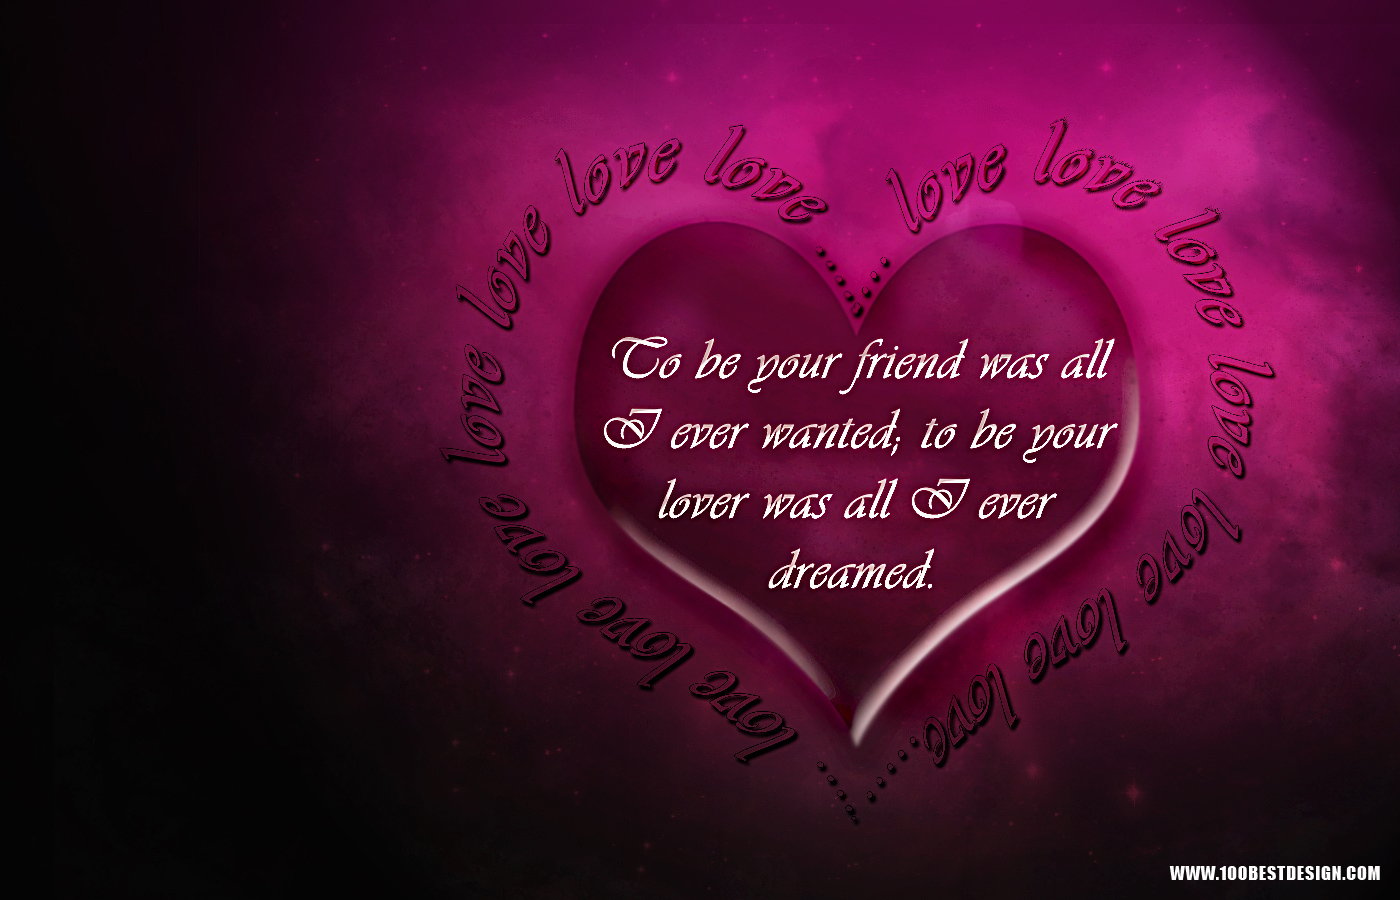 48+] 100 Best Love Quotes Wallpaper - WallpaperSafari